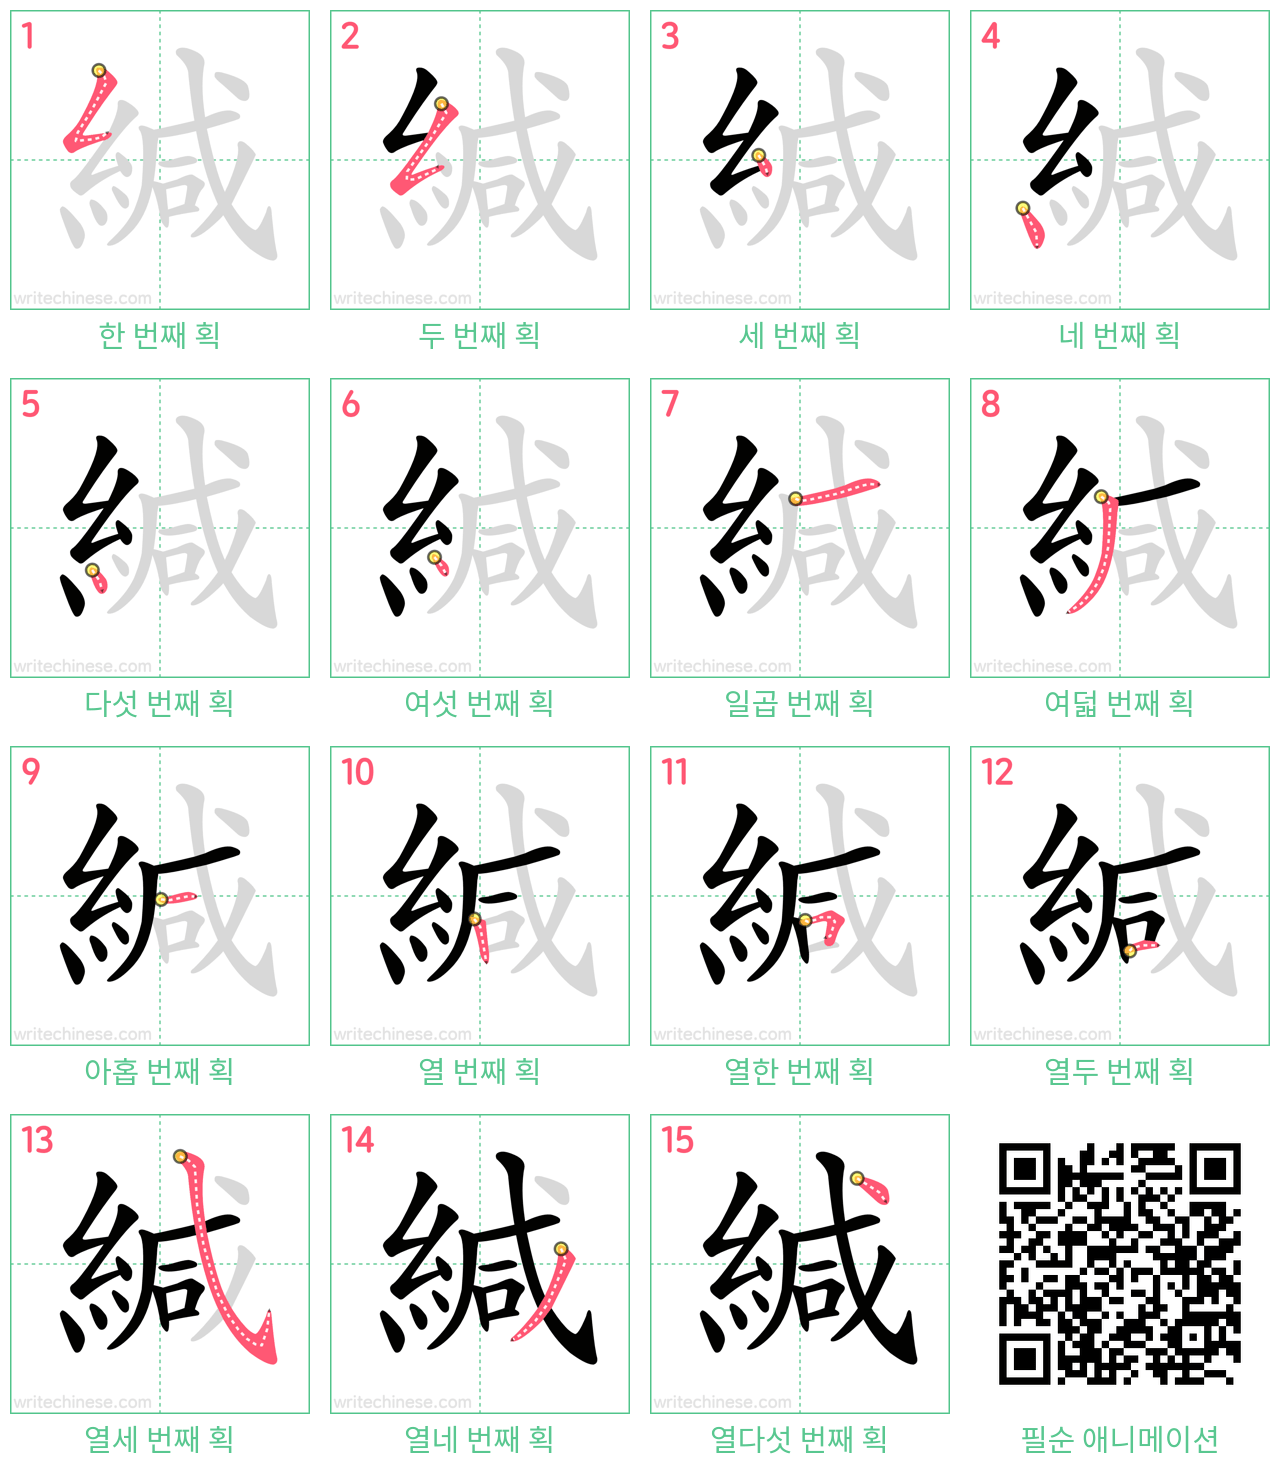 緘 step-by-step stroke order diagrams